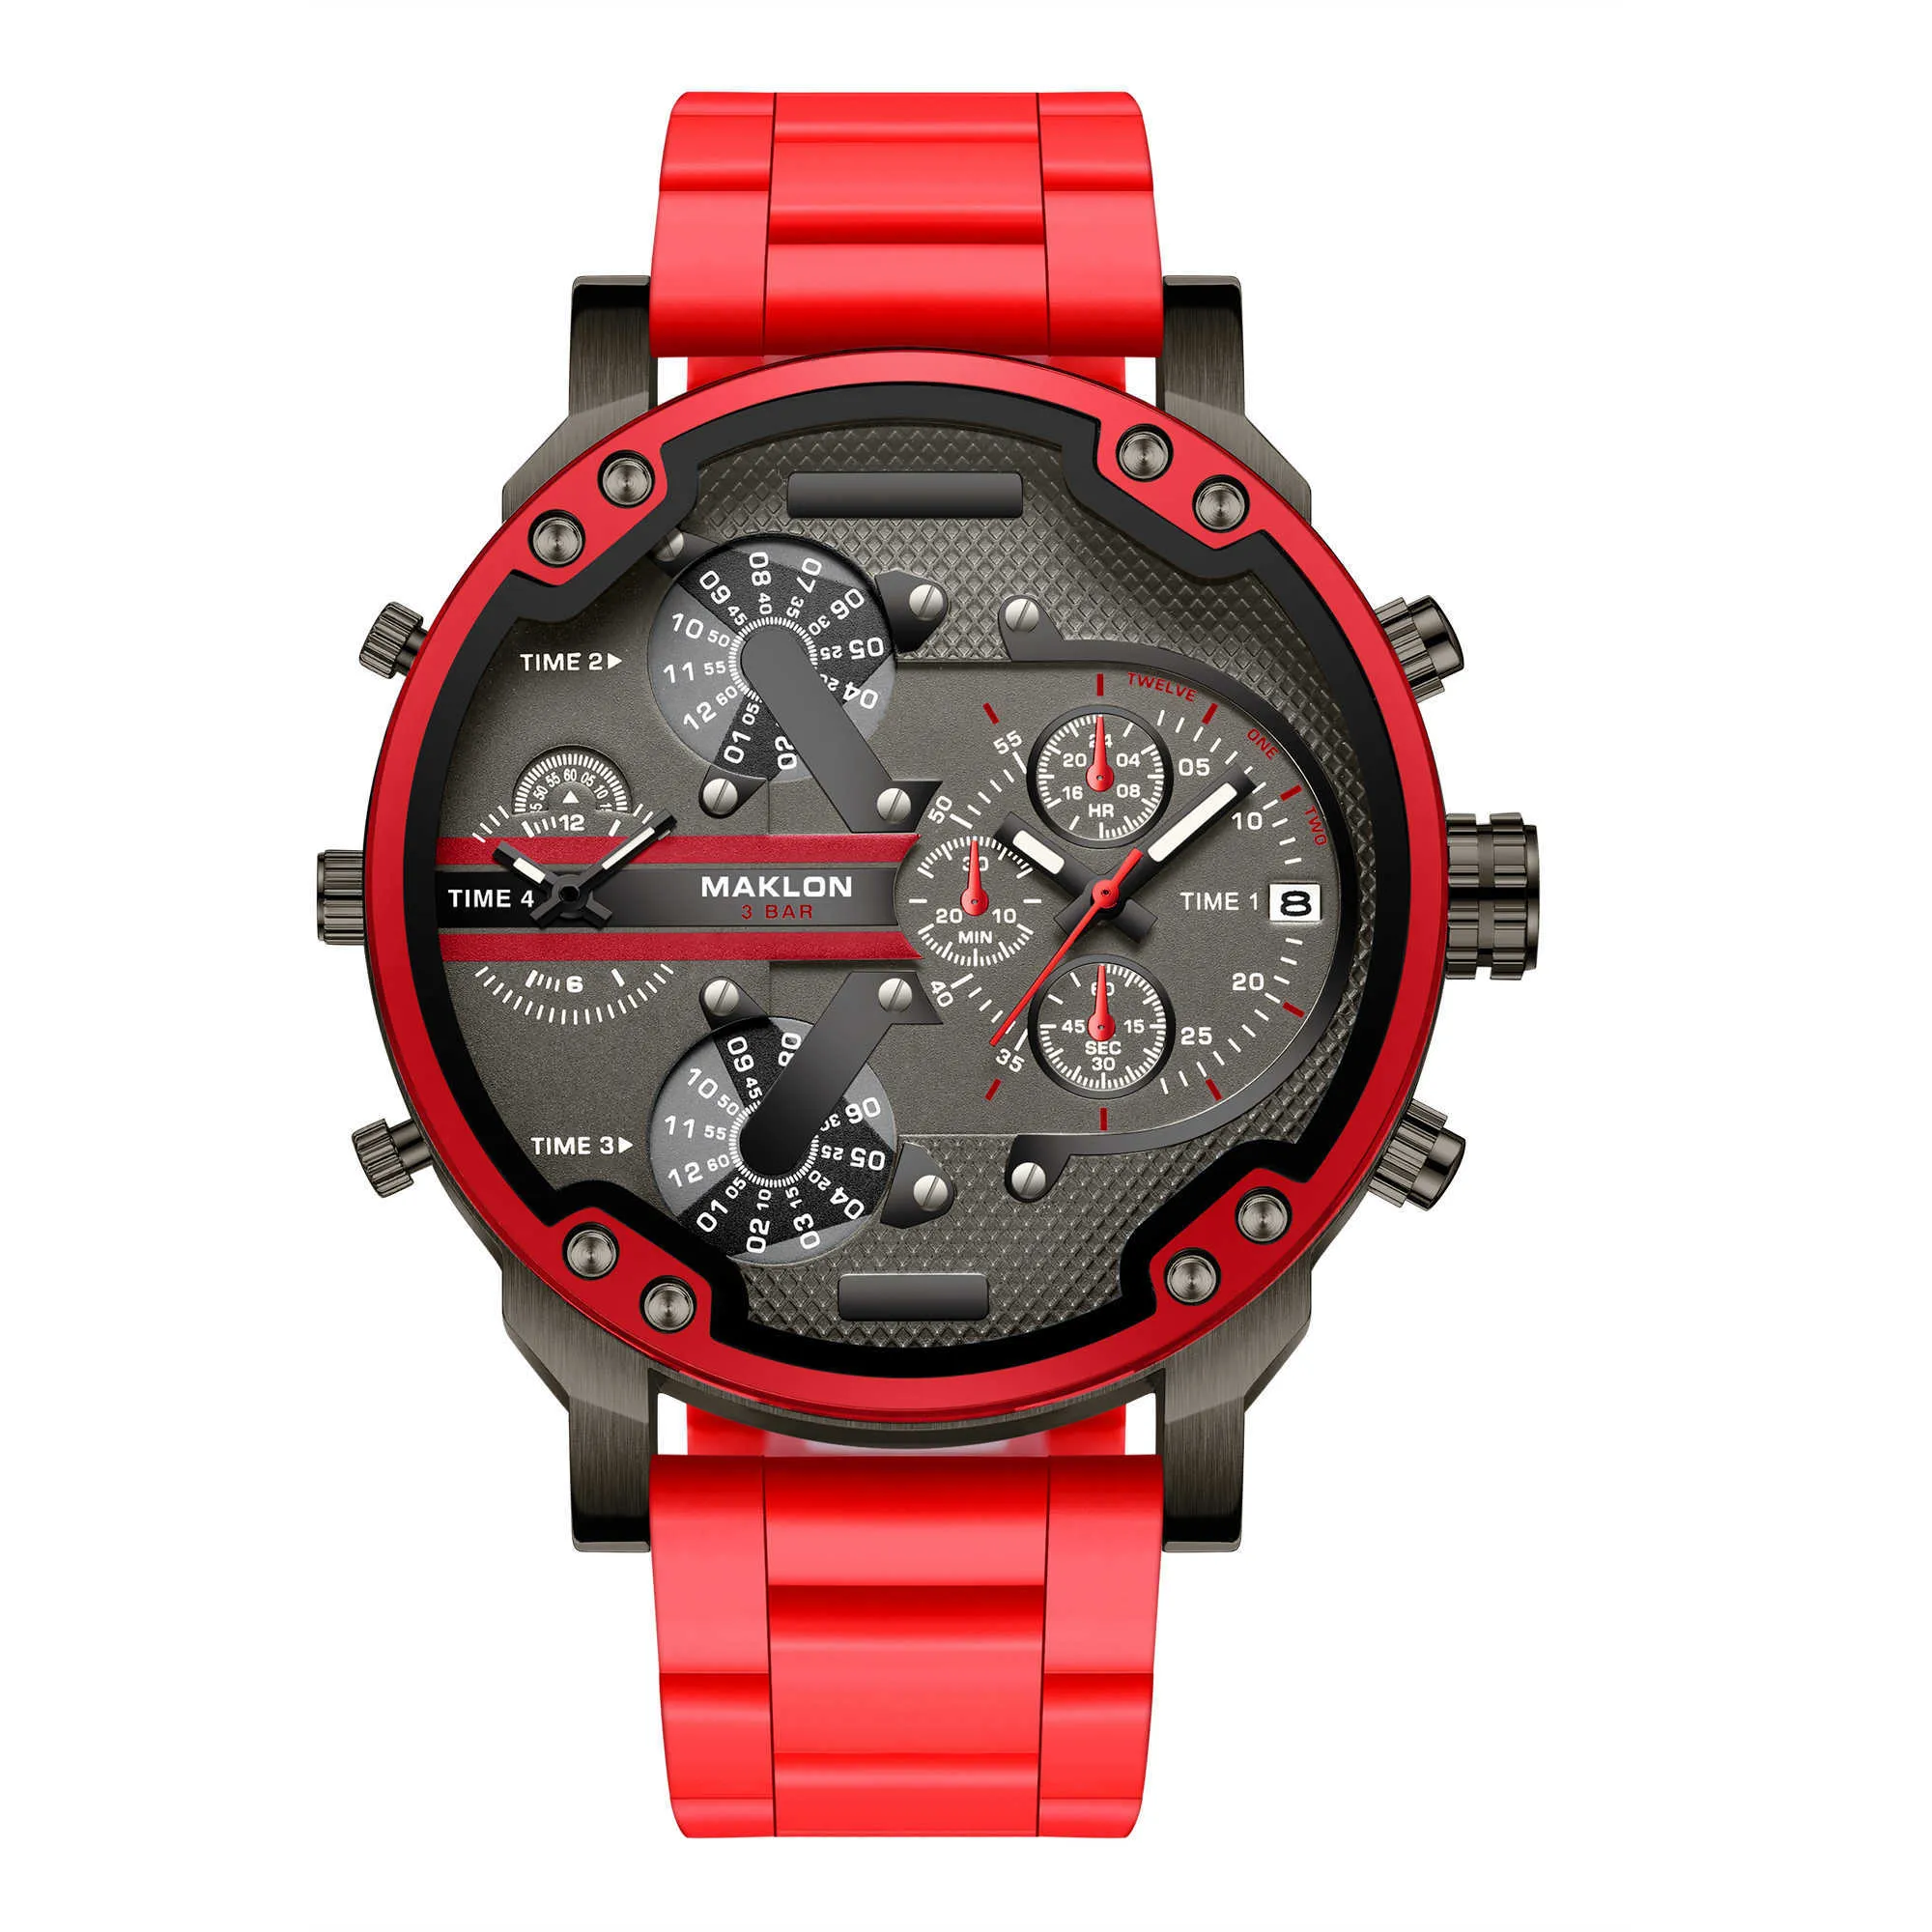 Dz7 2019 offres spéciales montre homme top marque dz luxe mode montres à quartz sport militaire montre-bracelet livraison directe X0625